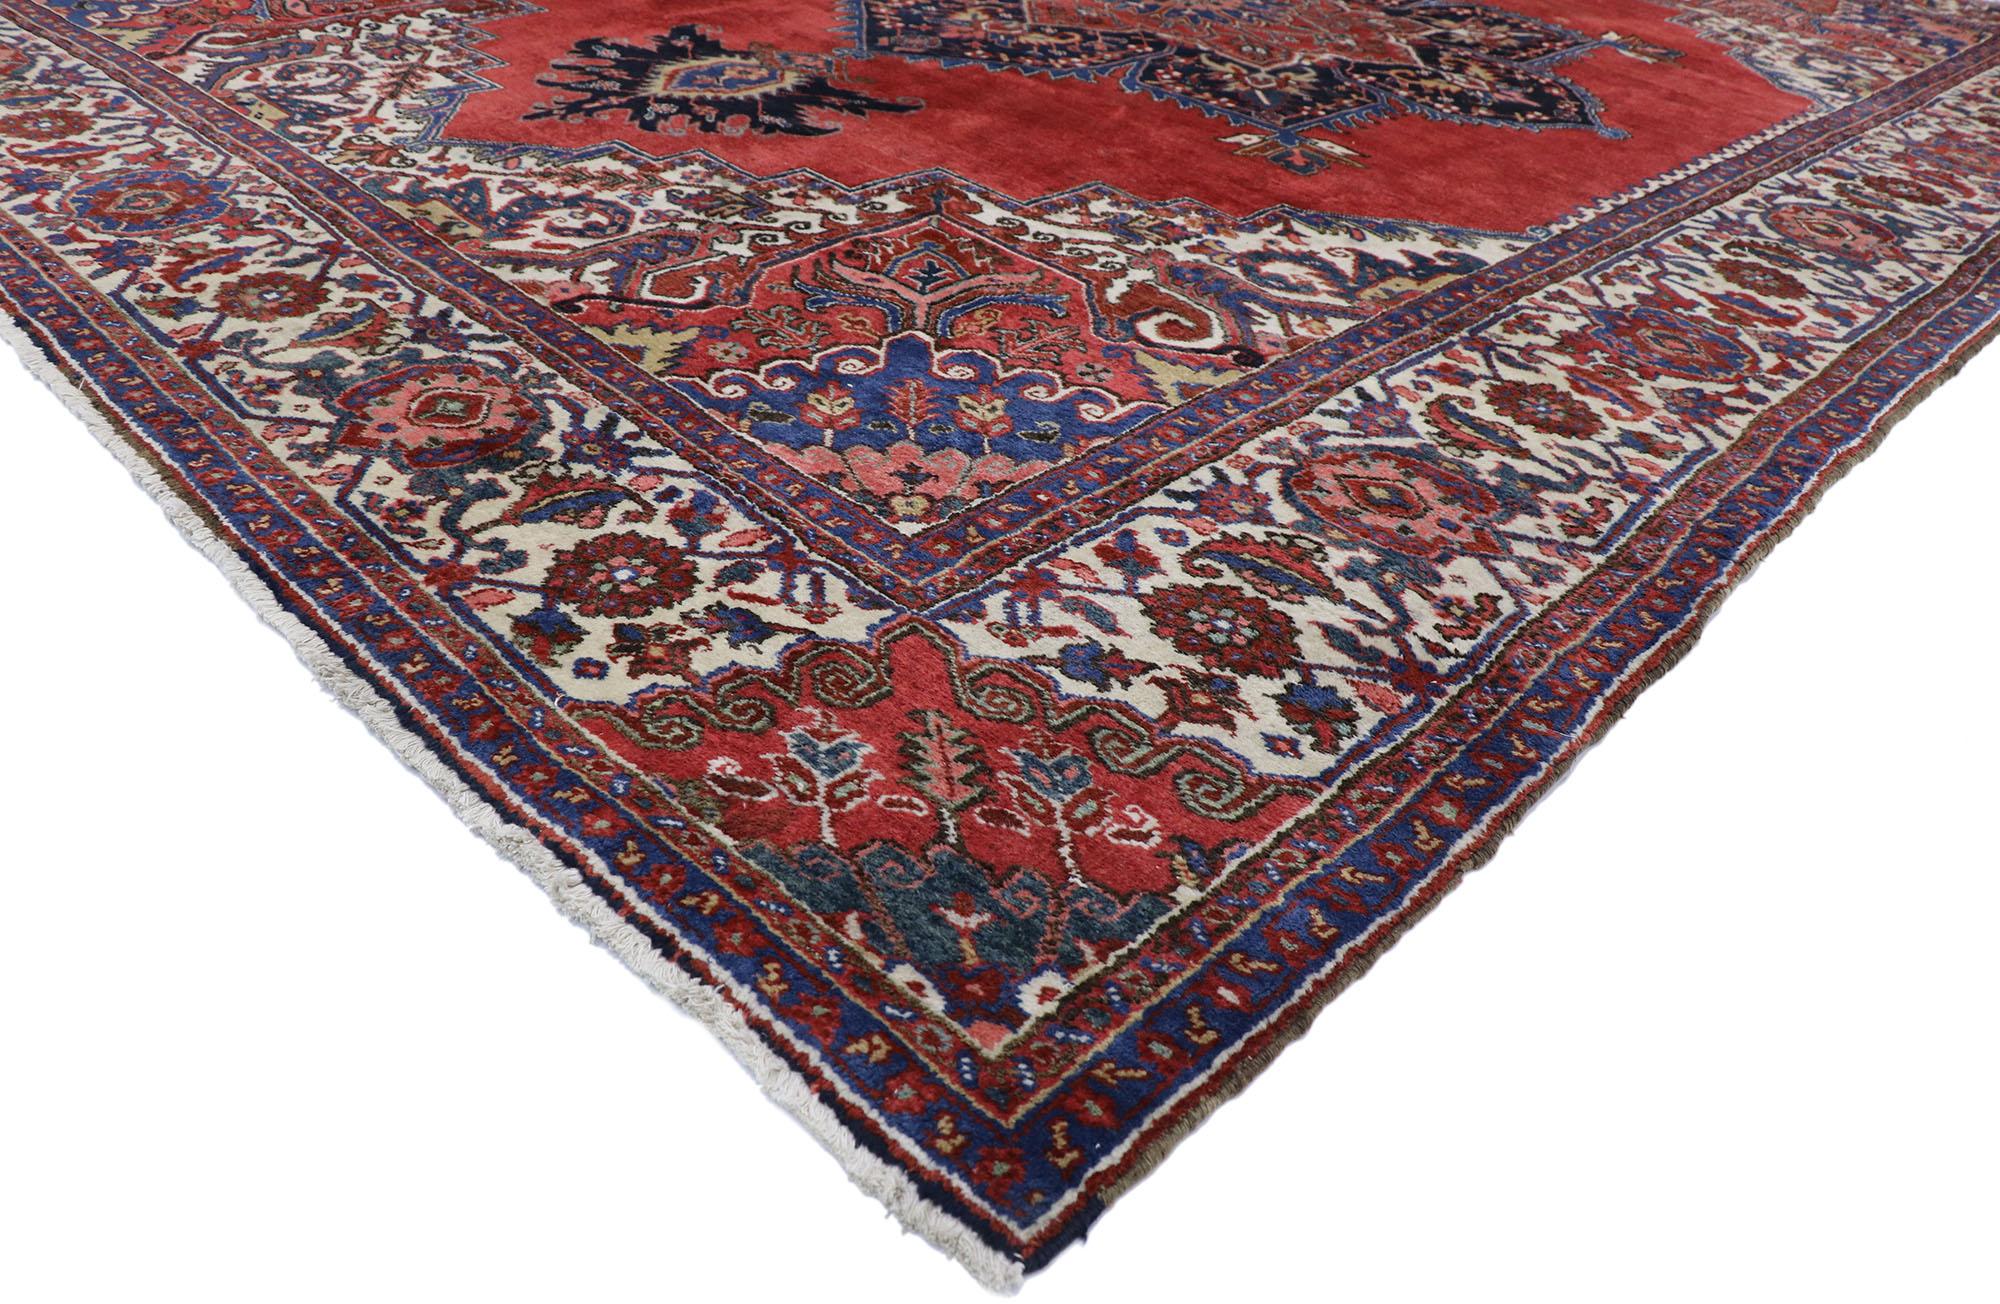 77628, ancien tapis persan Heriz de style royal jacobéen. Avec son attrait saisissant et sa palette de couleurs rouges saturées, ce tapis persan Heriz ancien en laine nouée à la main ressemble à un somptueux velours italien, rappelant le mobilier